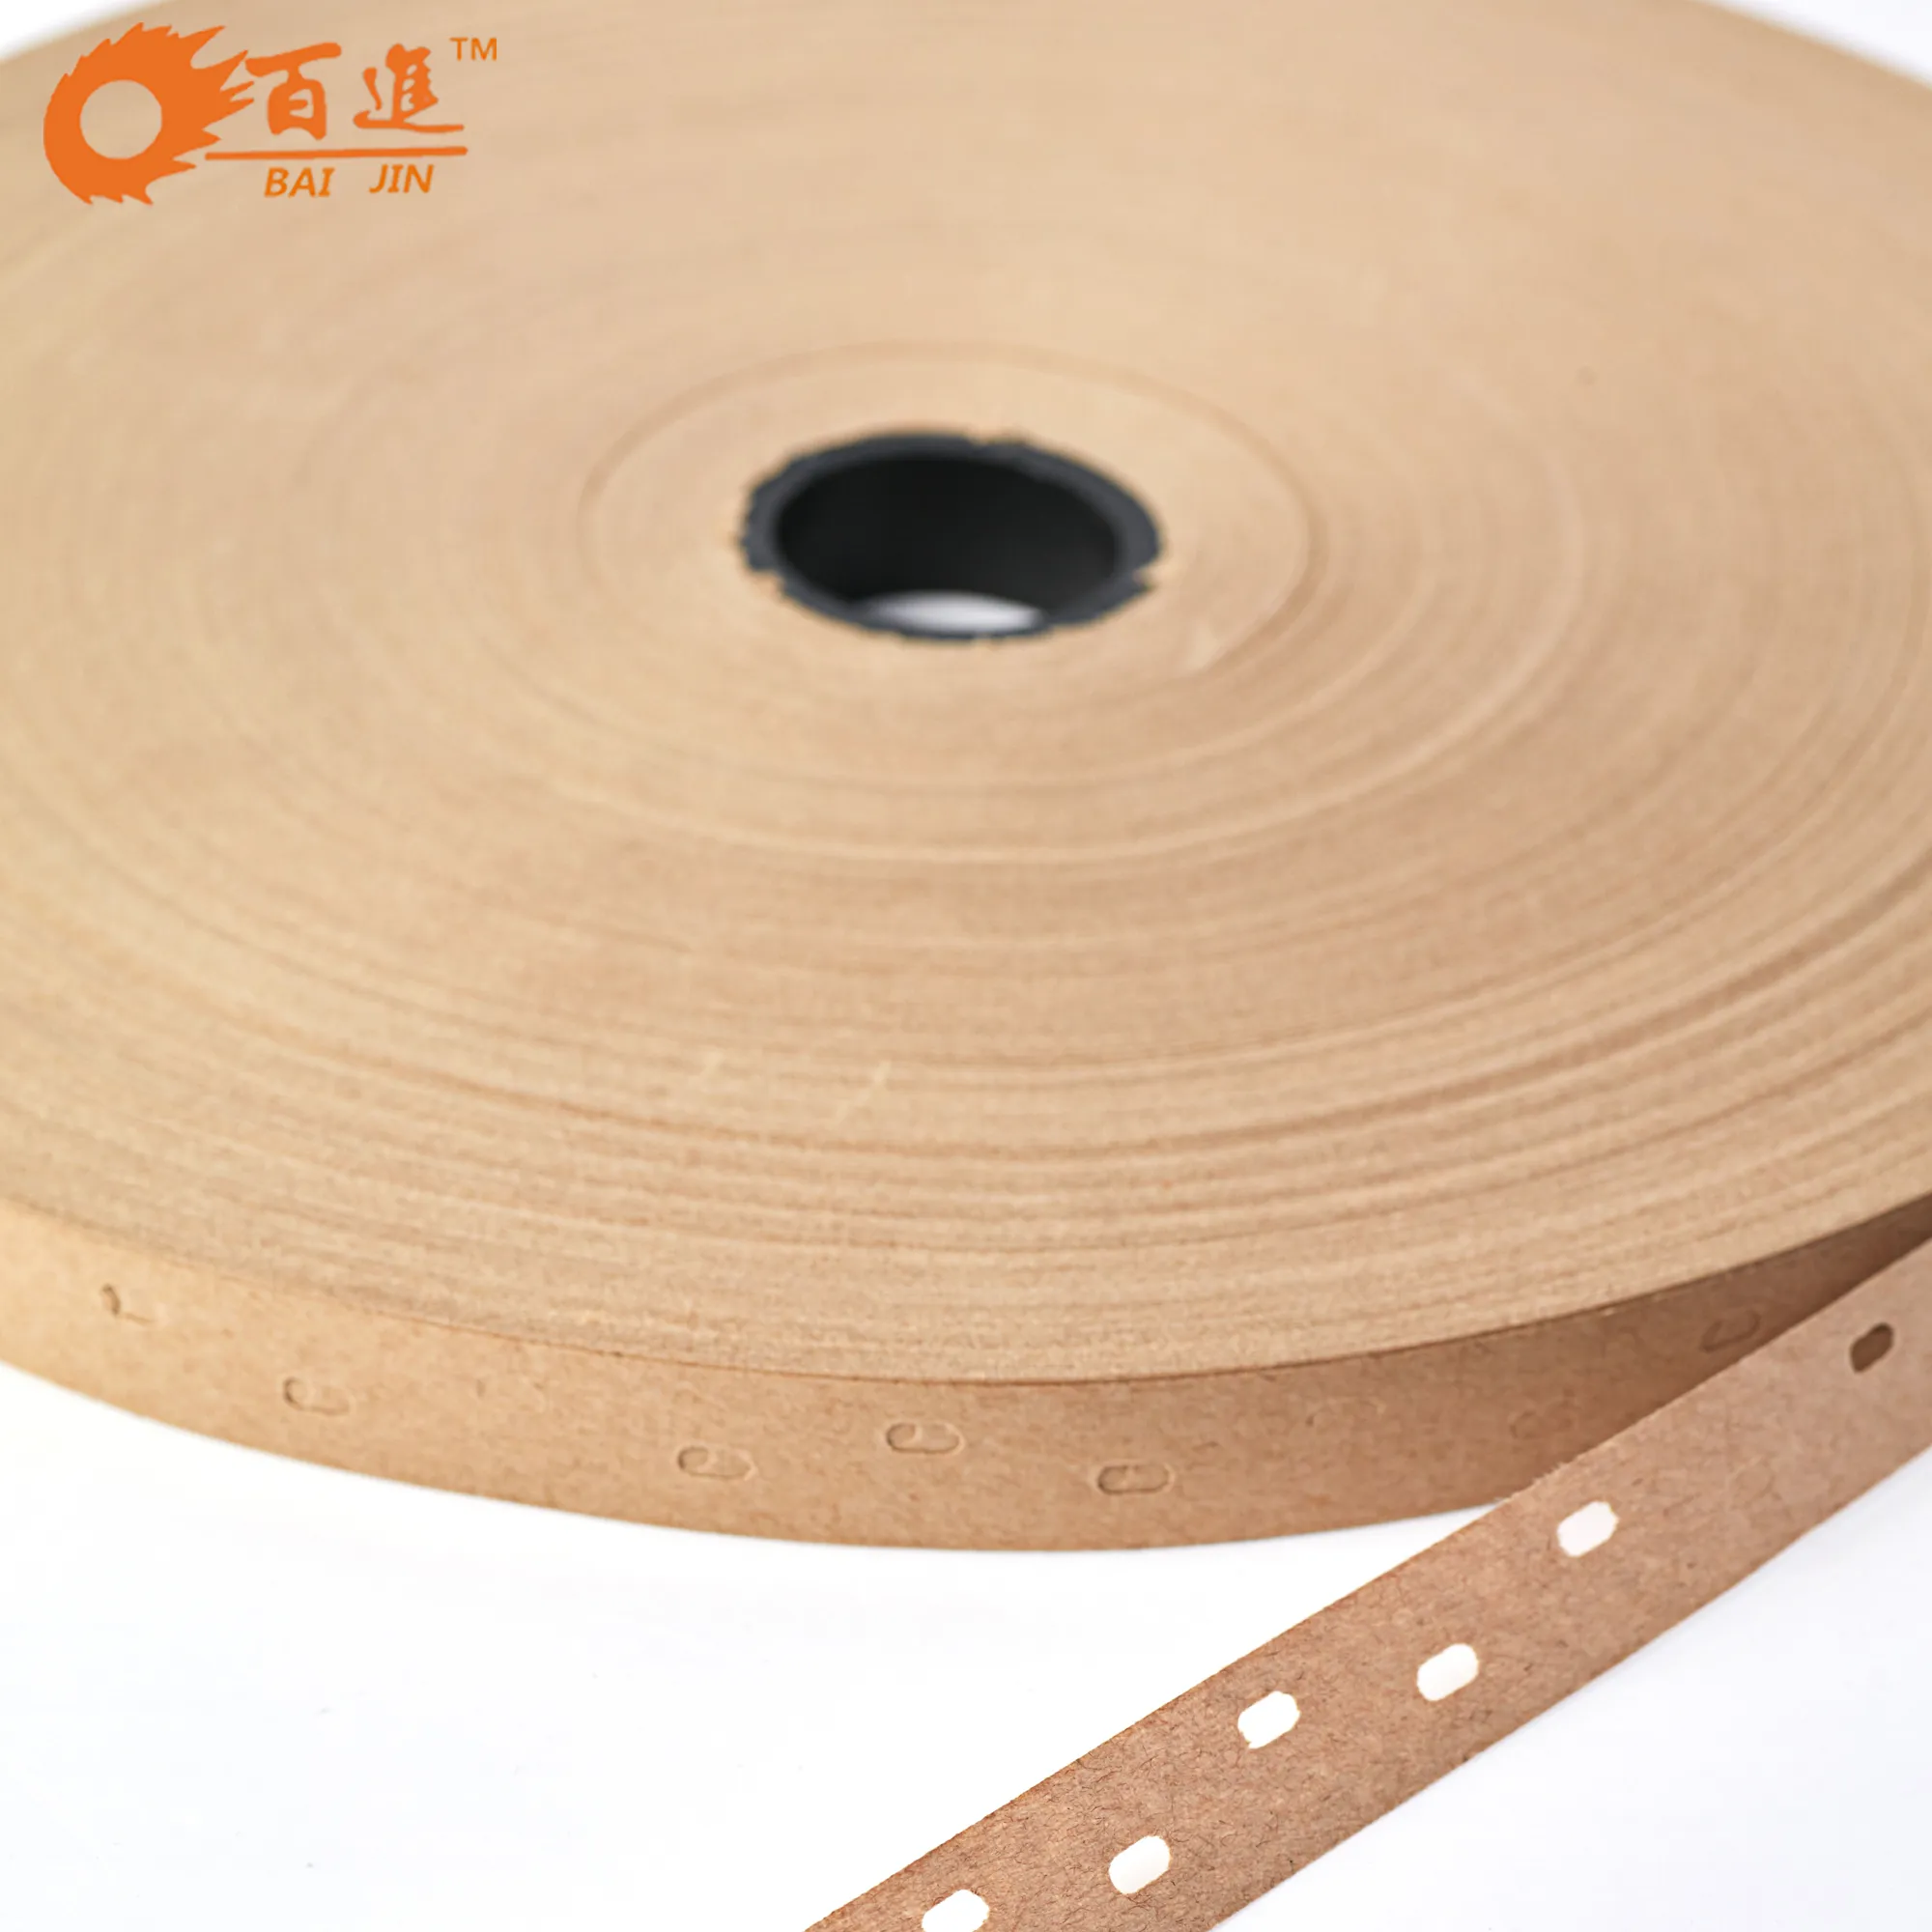 Plywood veneer tape for furniture repairing